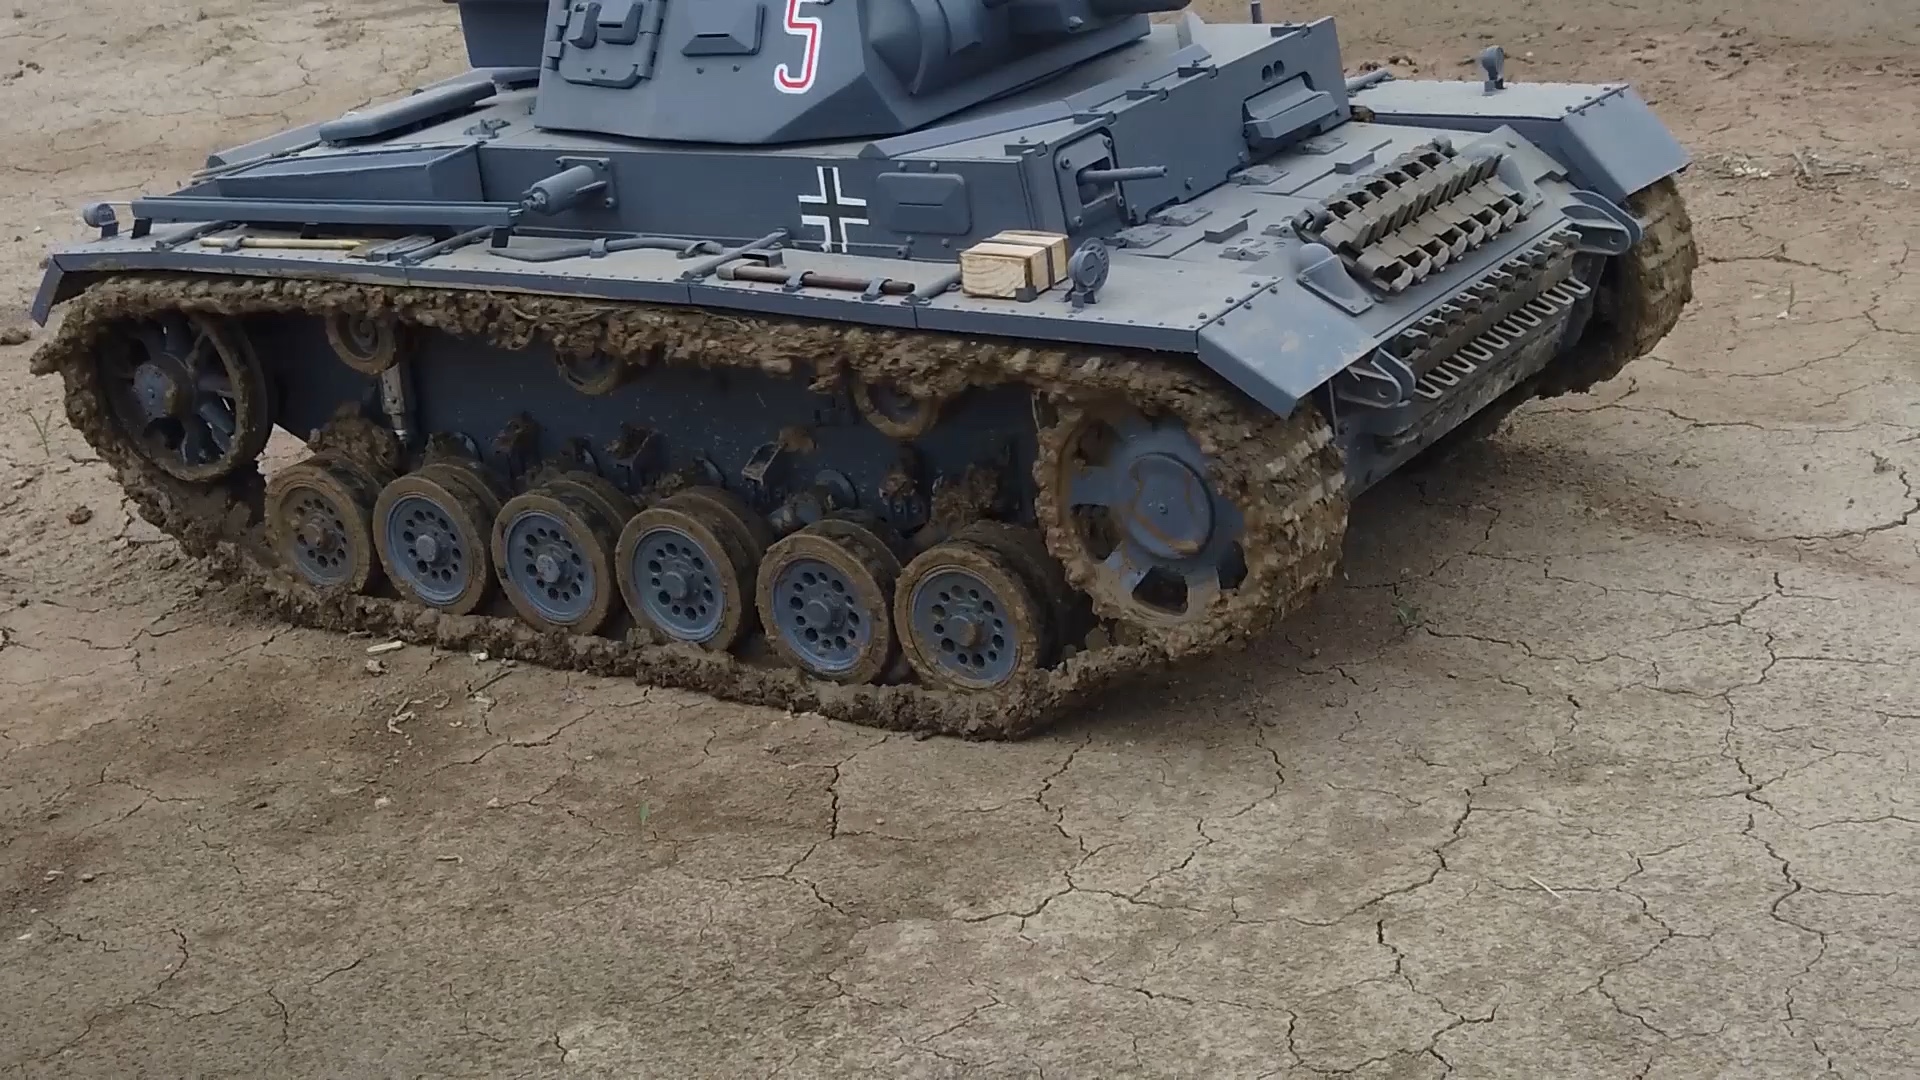 1/6 比例 全金属 RC遥控 三号坦克模型（Panzer III），泥地跑 - 金属战车制作所